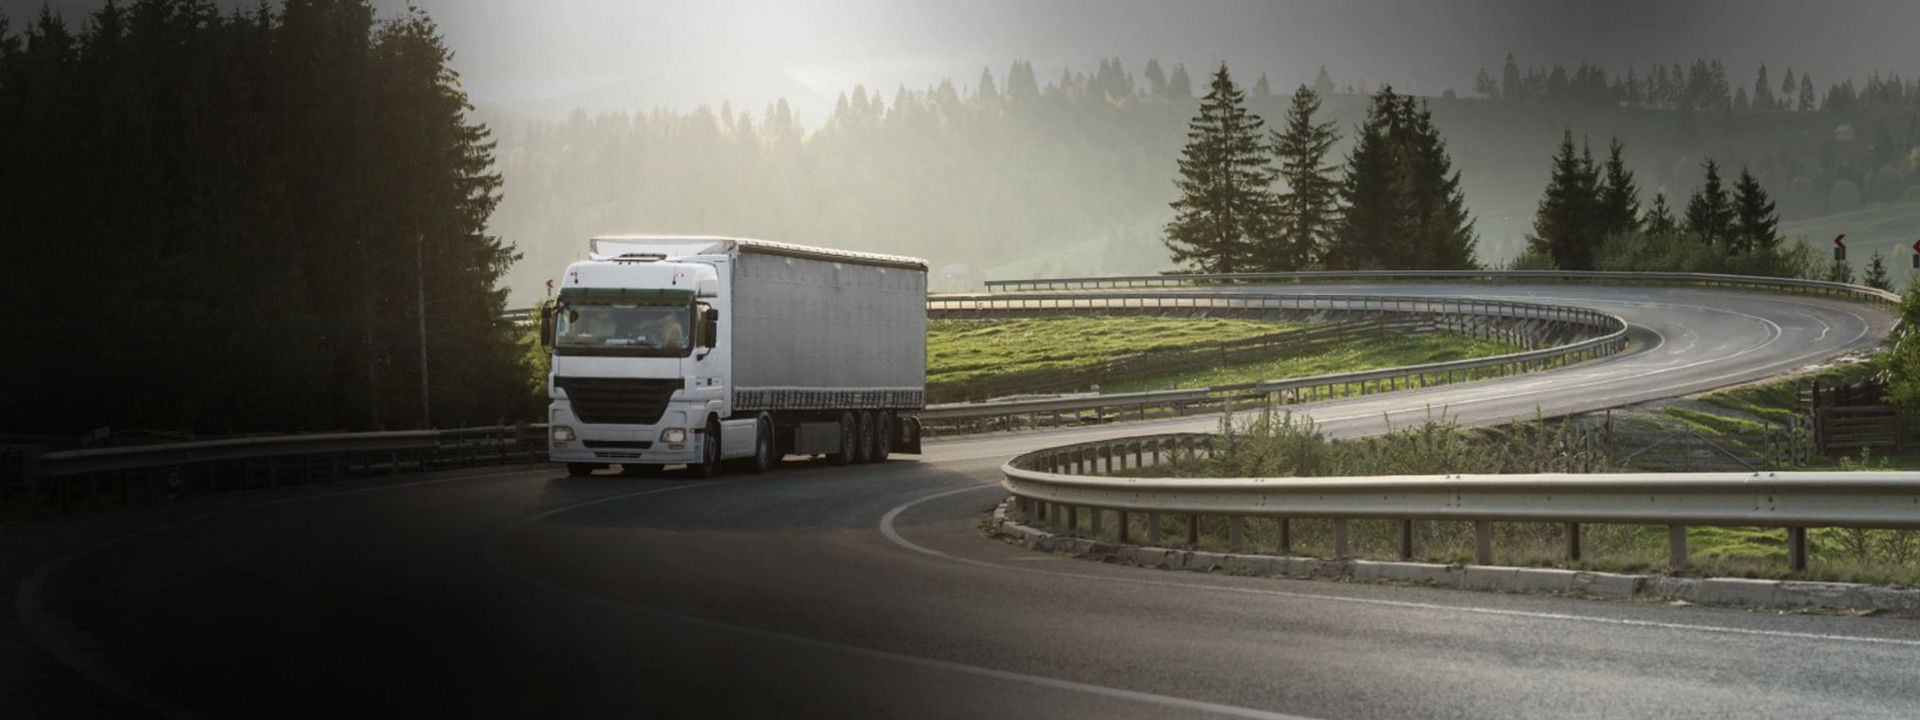 Zdjęcie przedstawia ciężarówkę poruszającą się po drodze regionalnej na uniwersalnych oponach ciężarowymi Bridgestone.